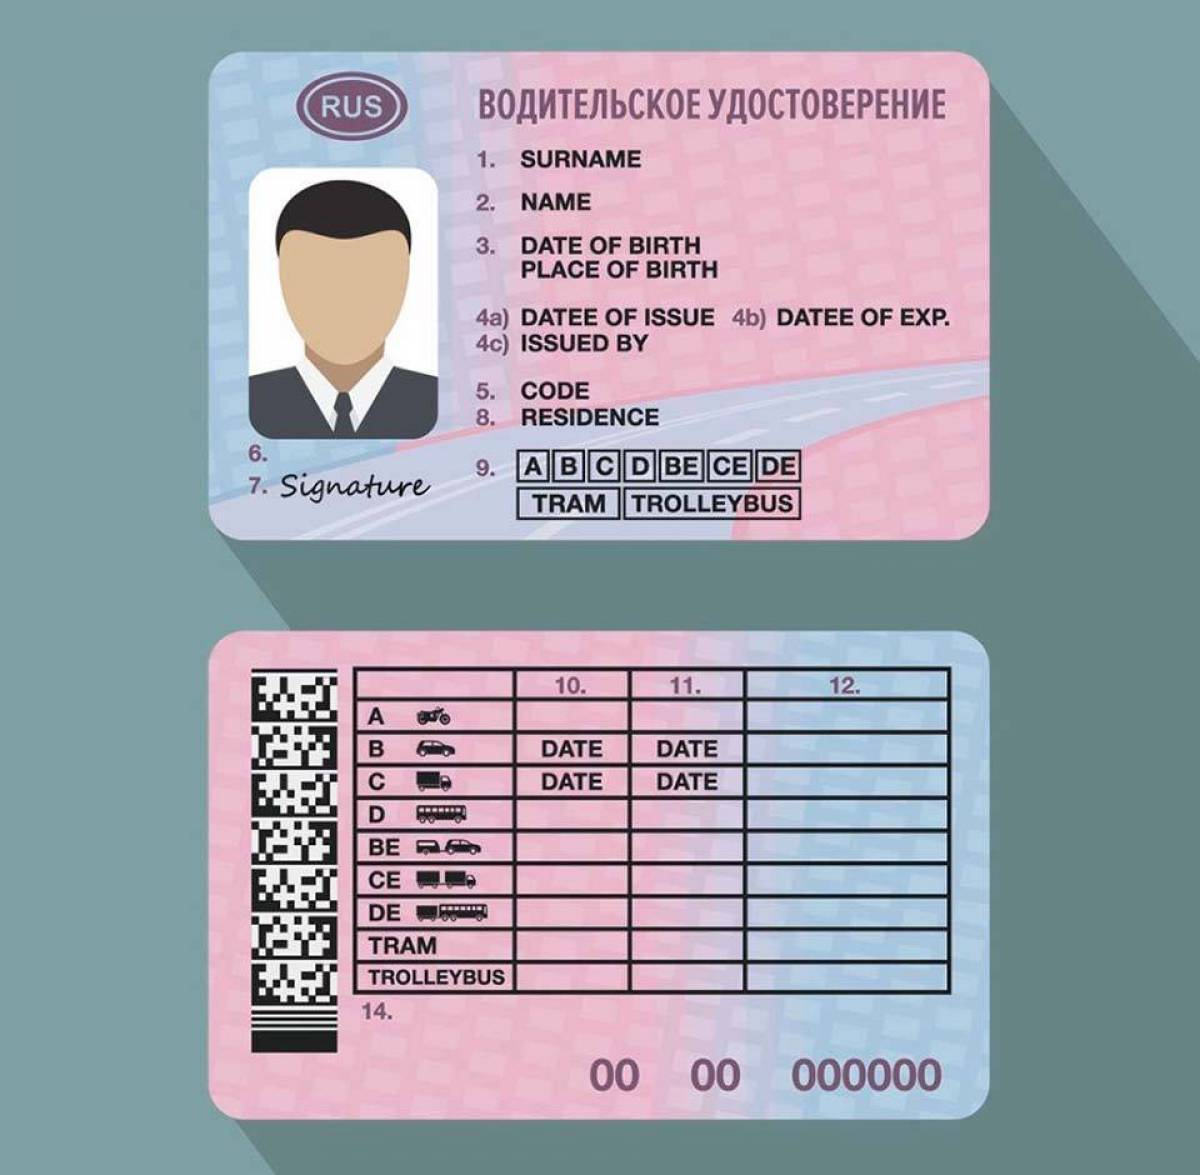 Новые правила водительских прав с 1 апреля. Бланки водительского удостоверения.